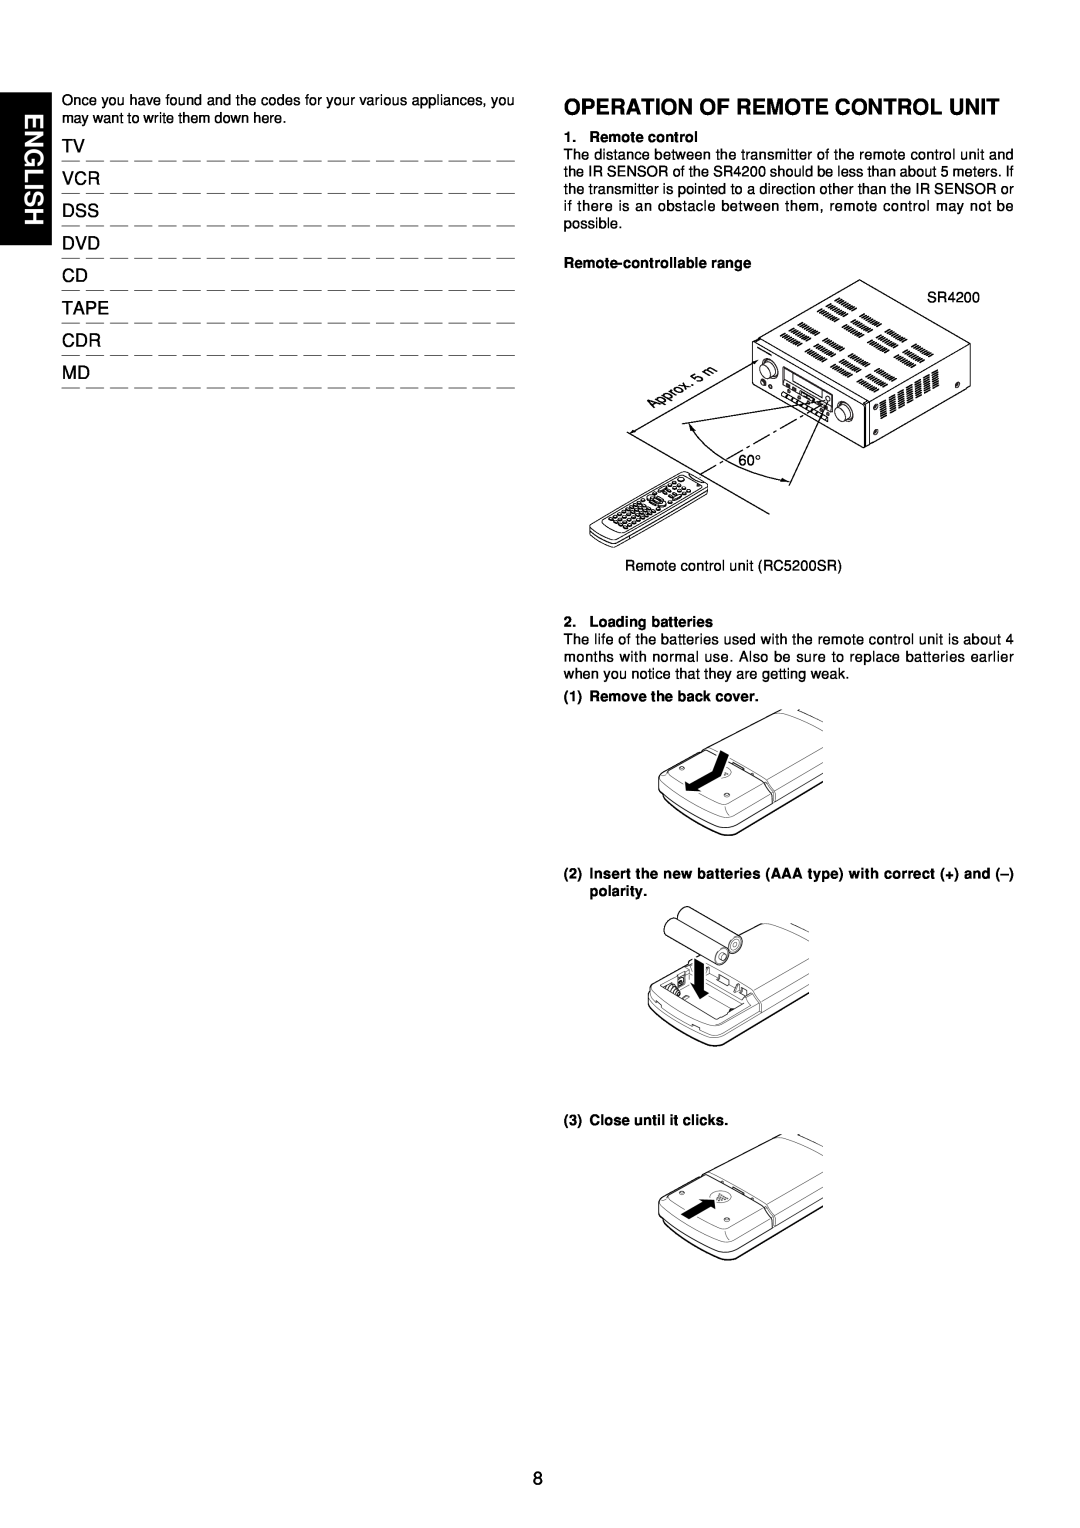 Marantz SR4200 manual English, Remote control, Remote-controllablerange, Loading batteries, Remove the back cover 